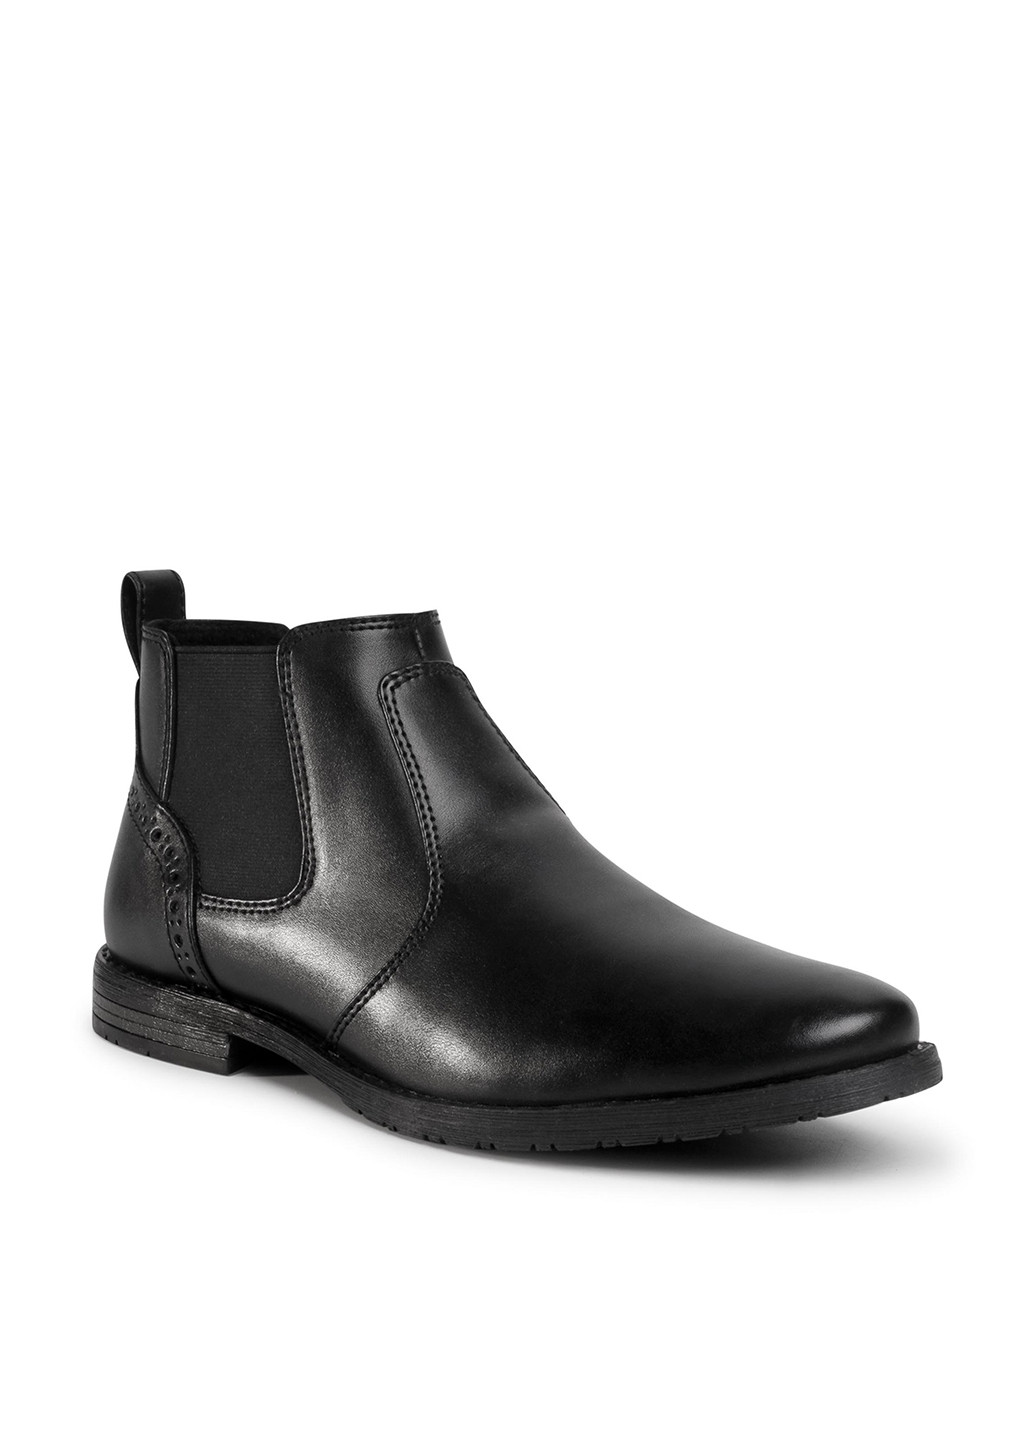 Черные осенние черевики mbs-steven-110 Lanetti